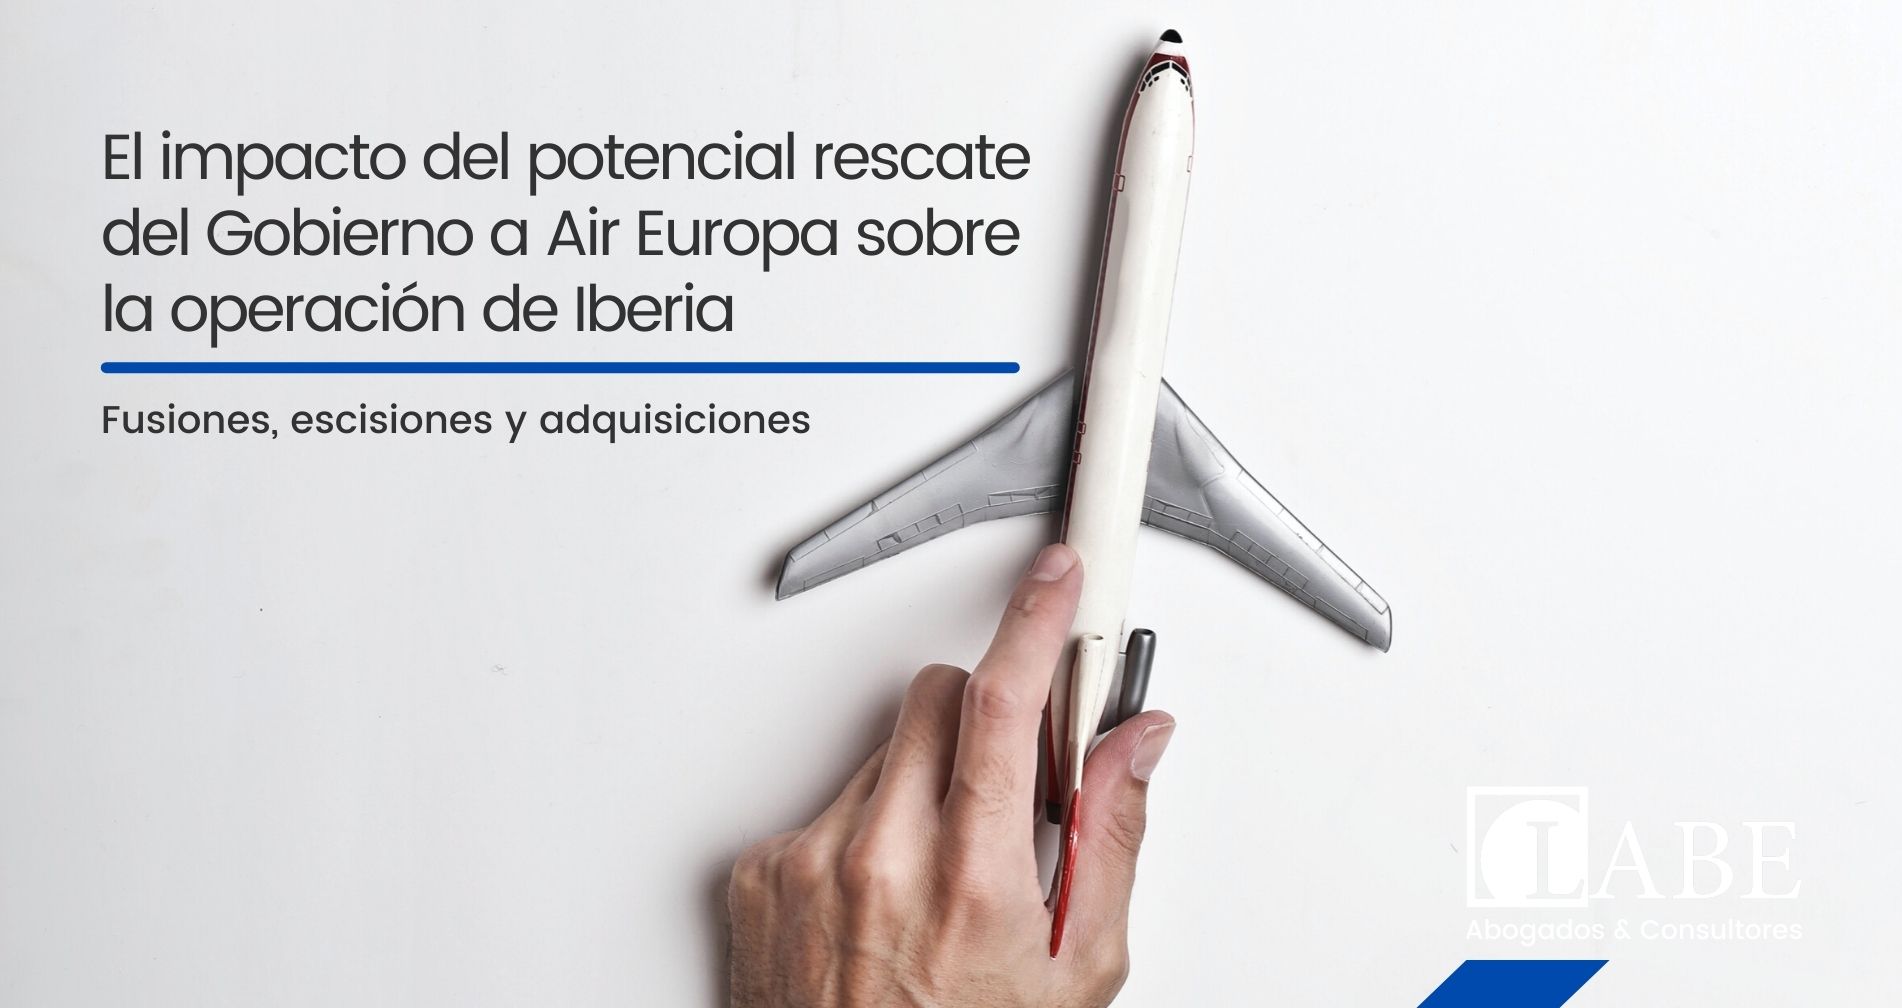 El impacto del potencial rescate del Gobierno a Air Europa sobre la operación de Iberia